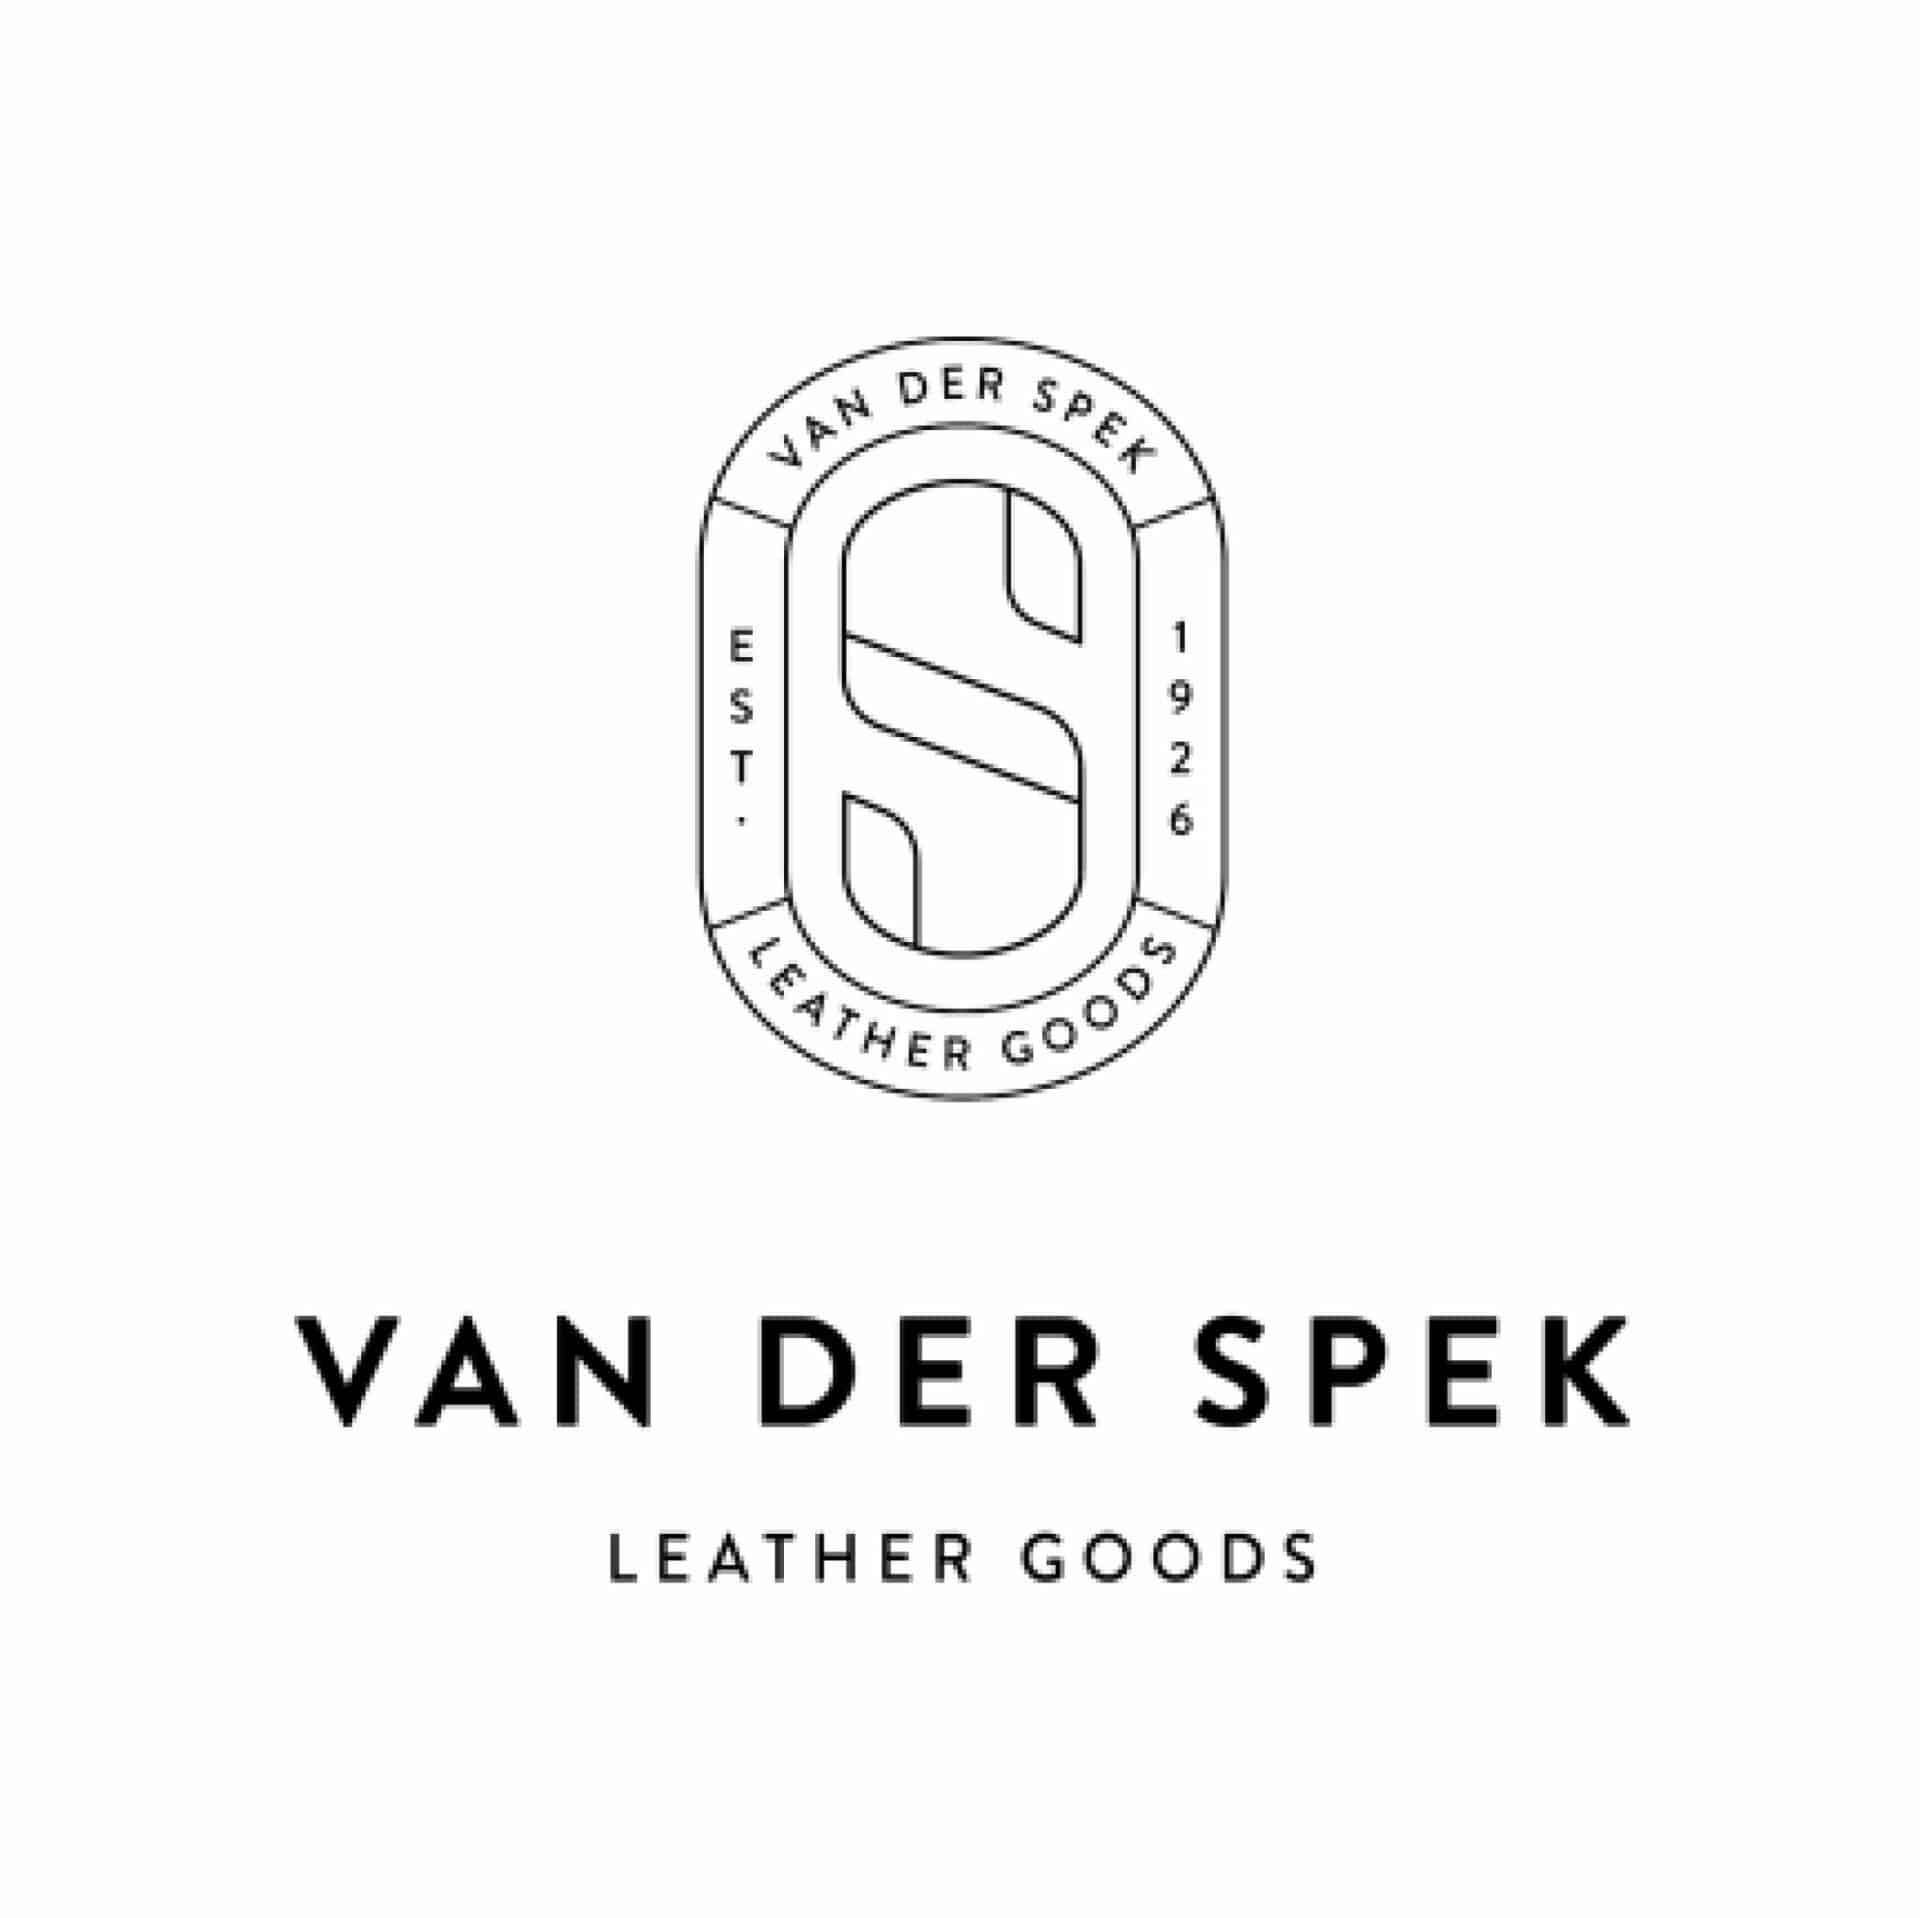 Van der Spek